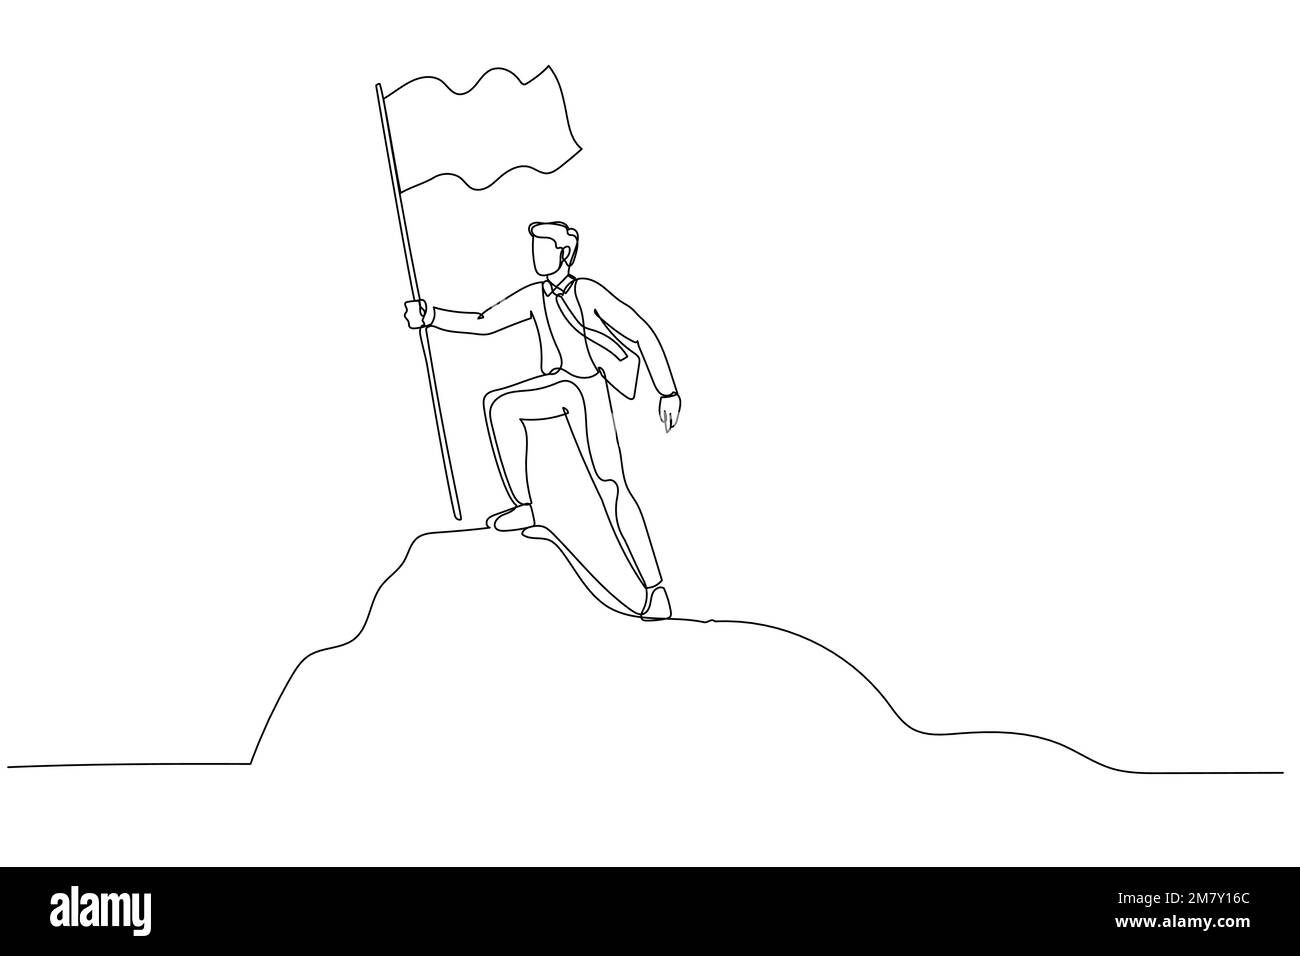 Cartoon eines Geschäftsmannes, der auf dem Gipfel des Berges steht und die Flagge hält wie ein Eroberer. Design im Kunststil mit einer durchgehenden Linie Stock Vektor